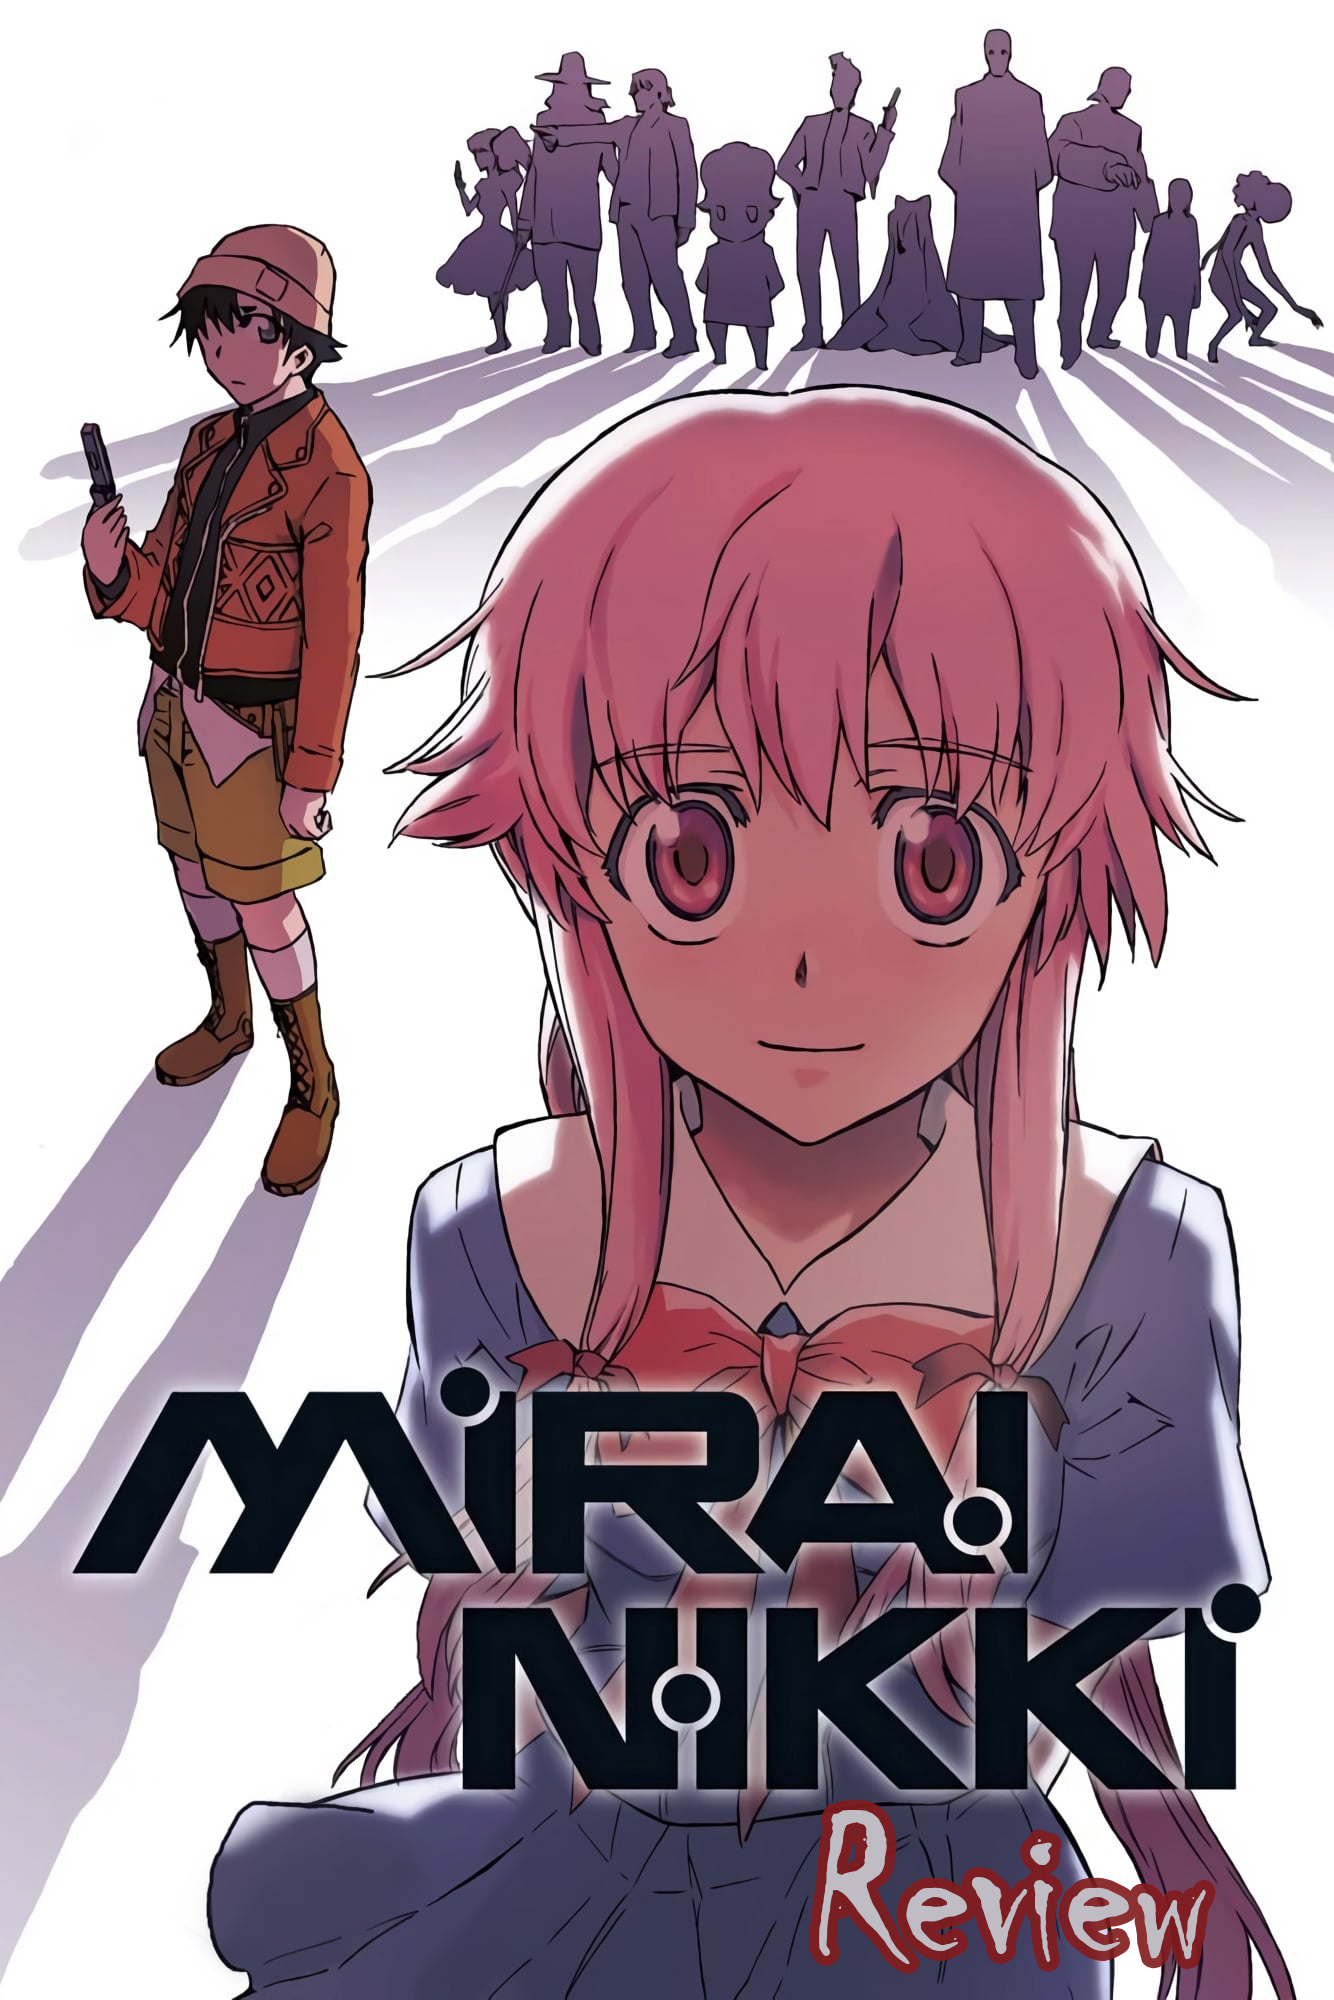 Anime Review: Mirai Nikki - The Future Diary 